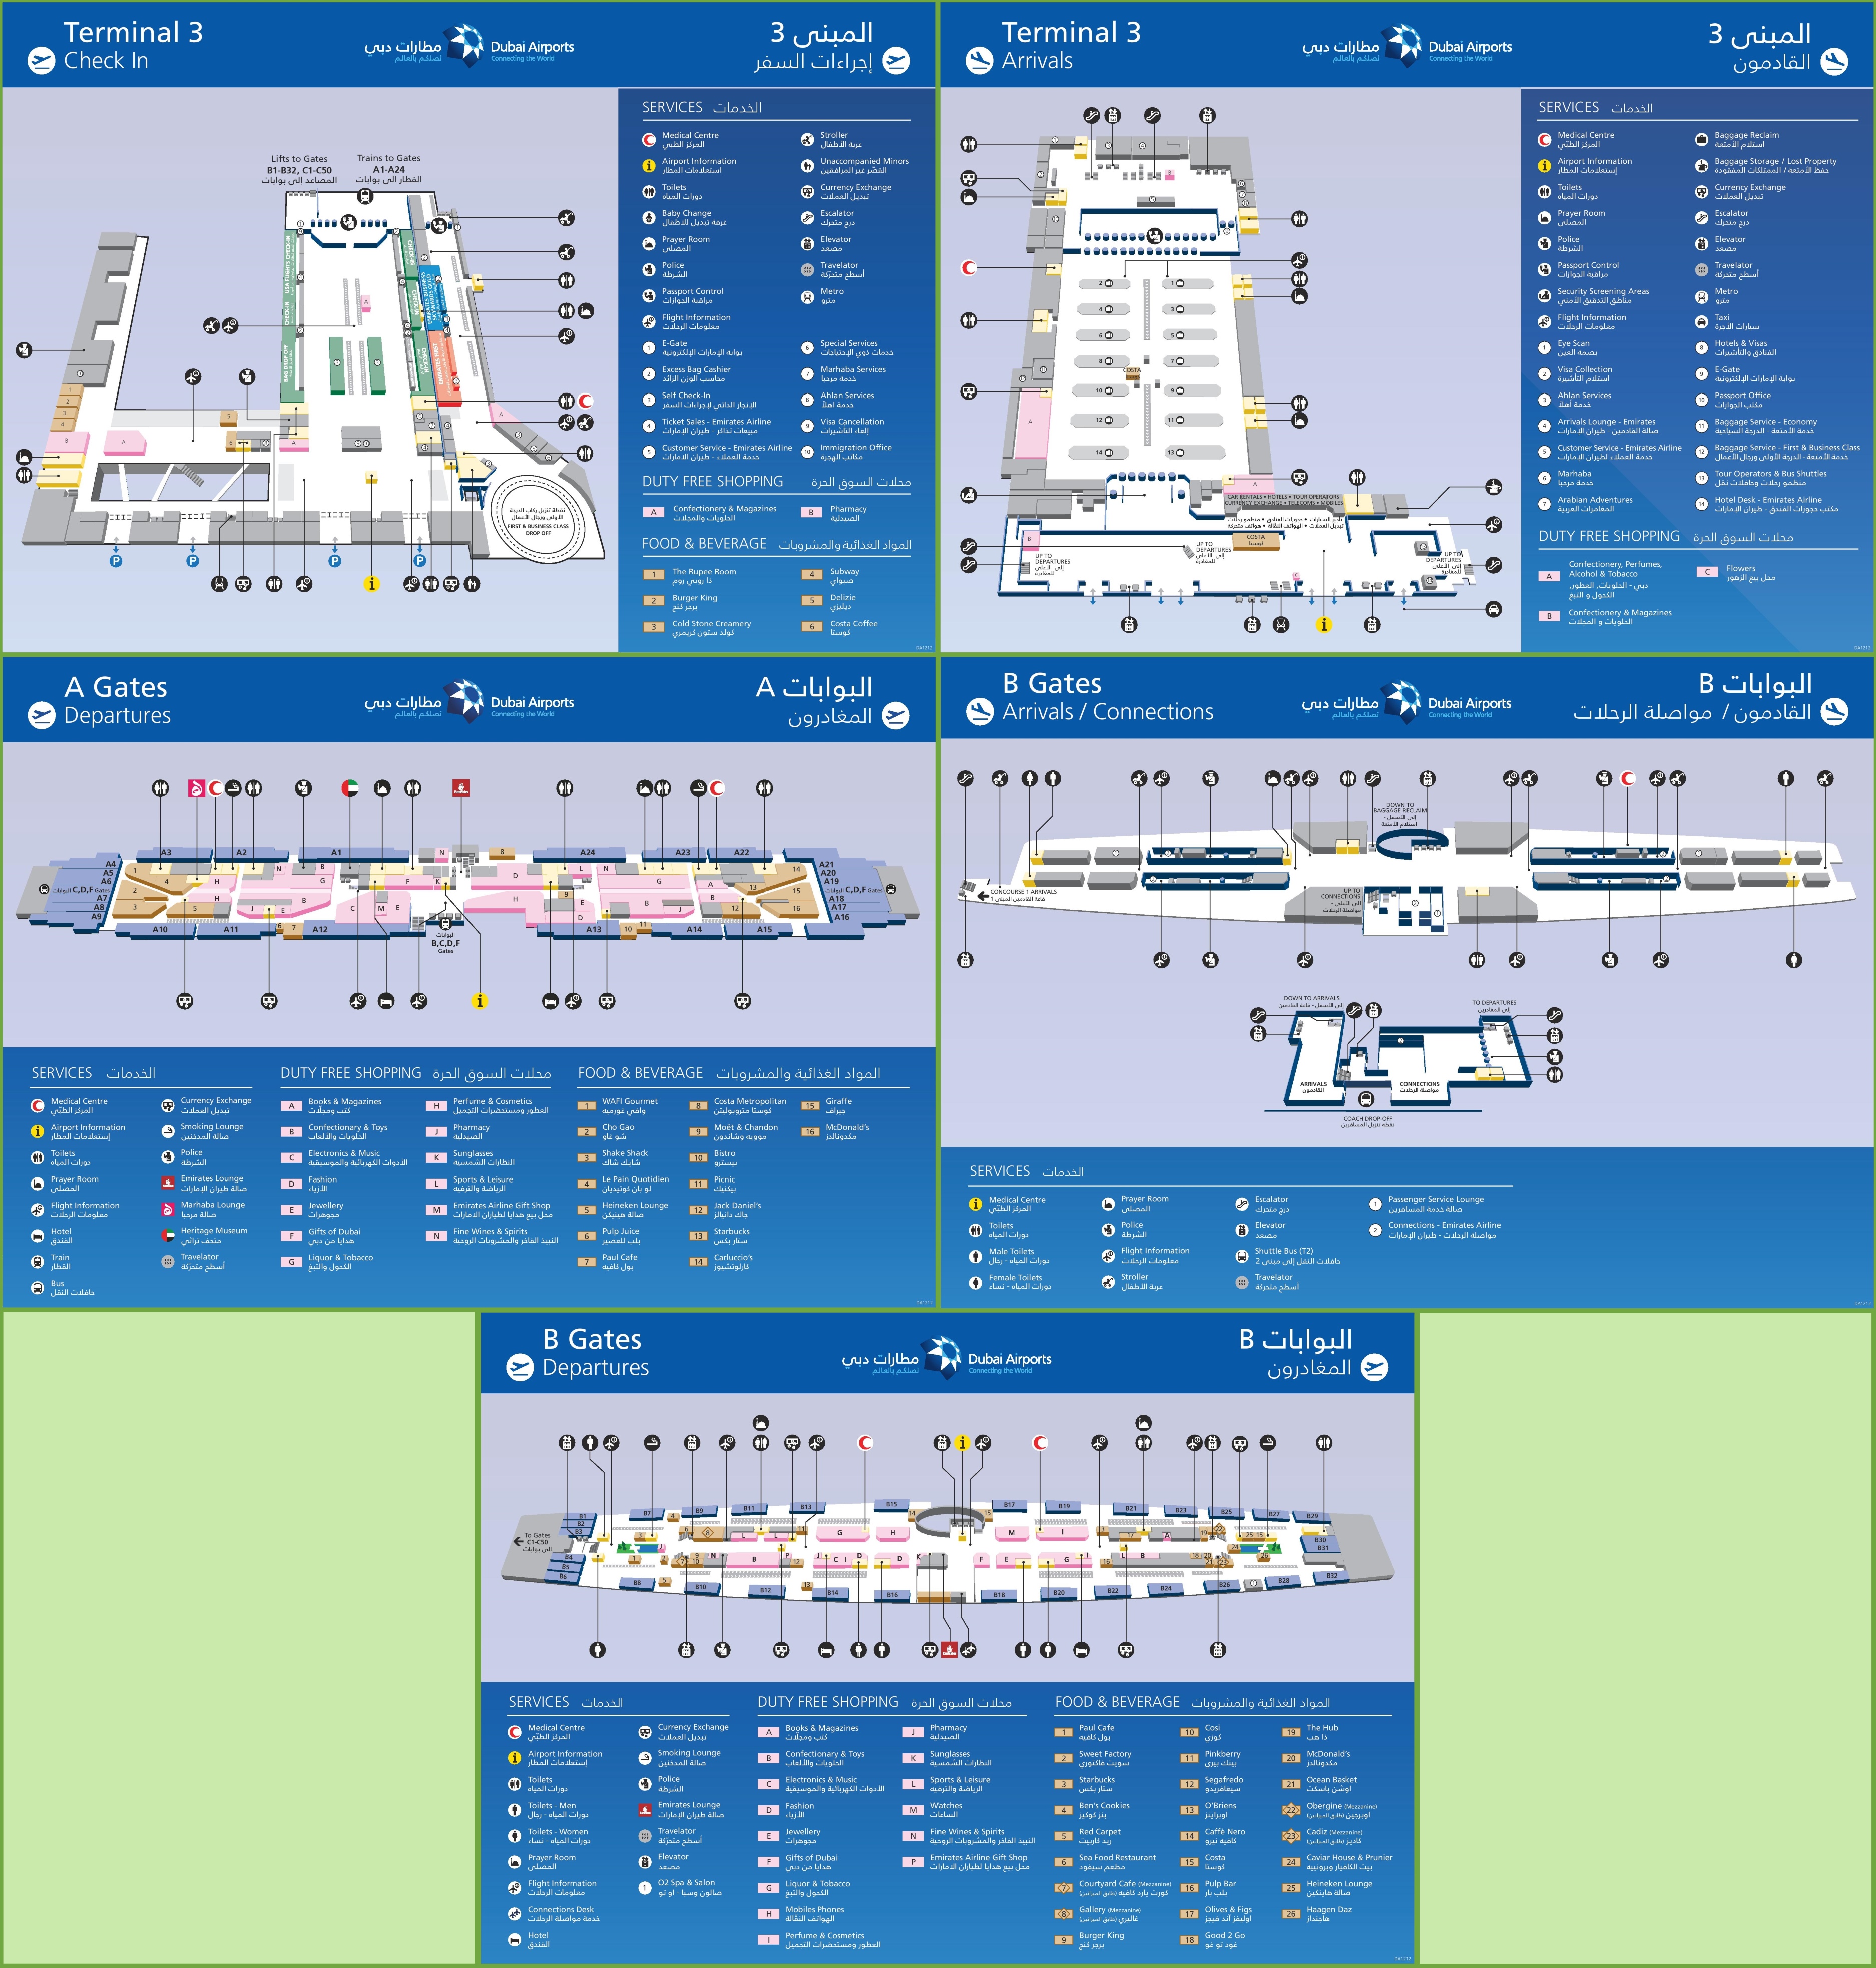 Схемы терминалов дубаи. Карта 3 терминала Дубай. Дубай аэропорт DXB терминал 3. Схема аэропорта Дубай терминал 3. Дубай аэропорт DXB схема.